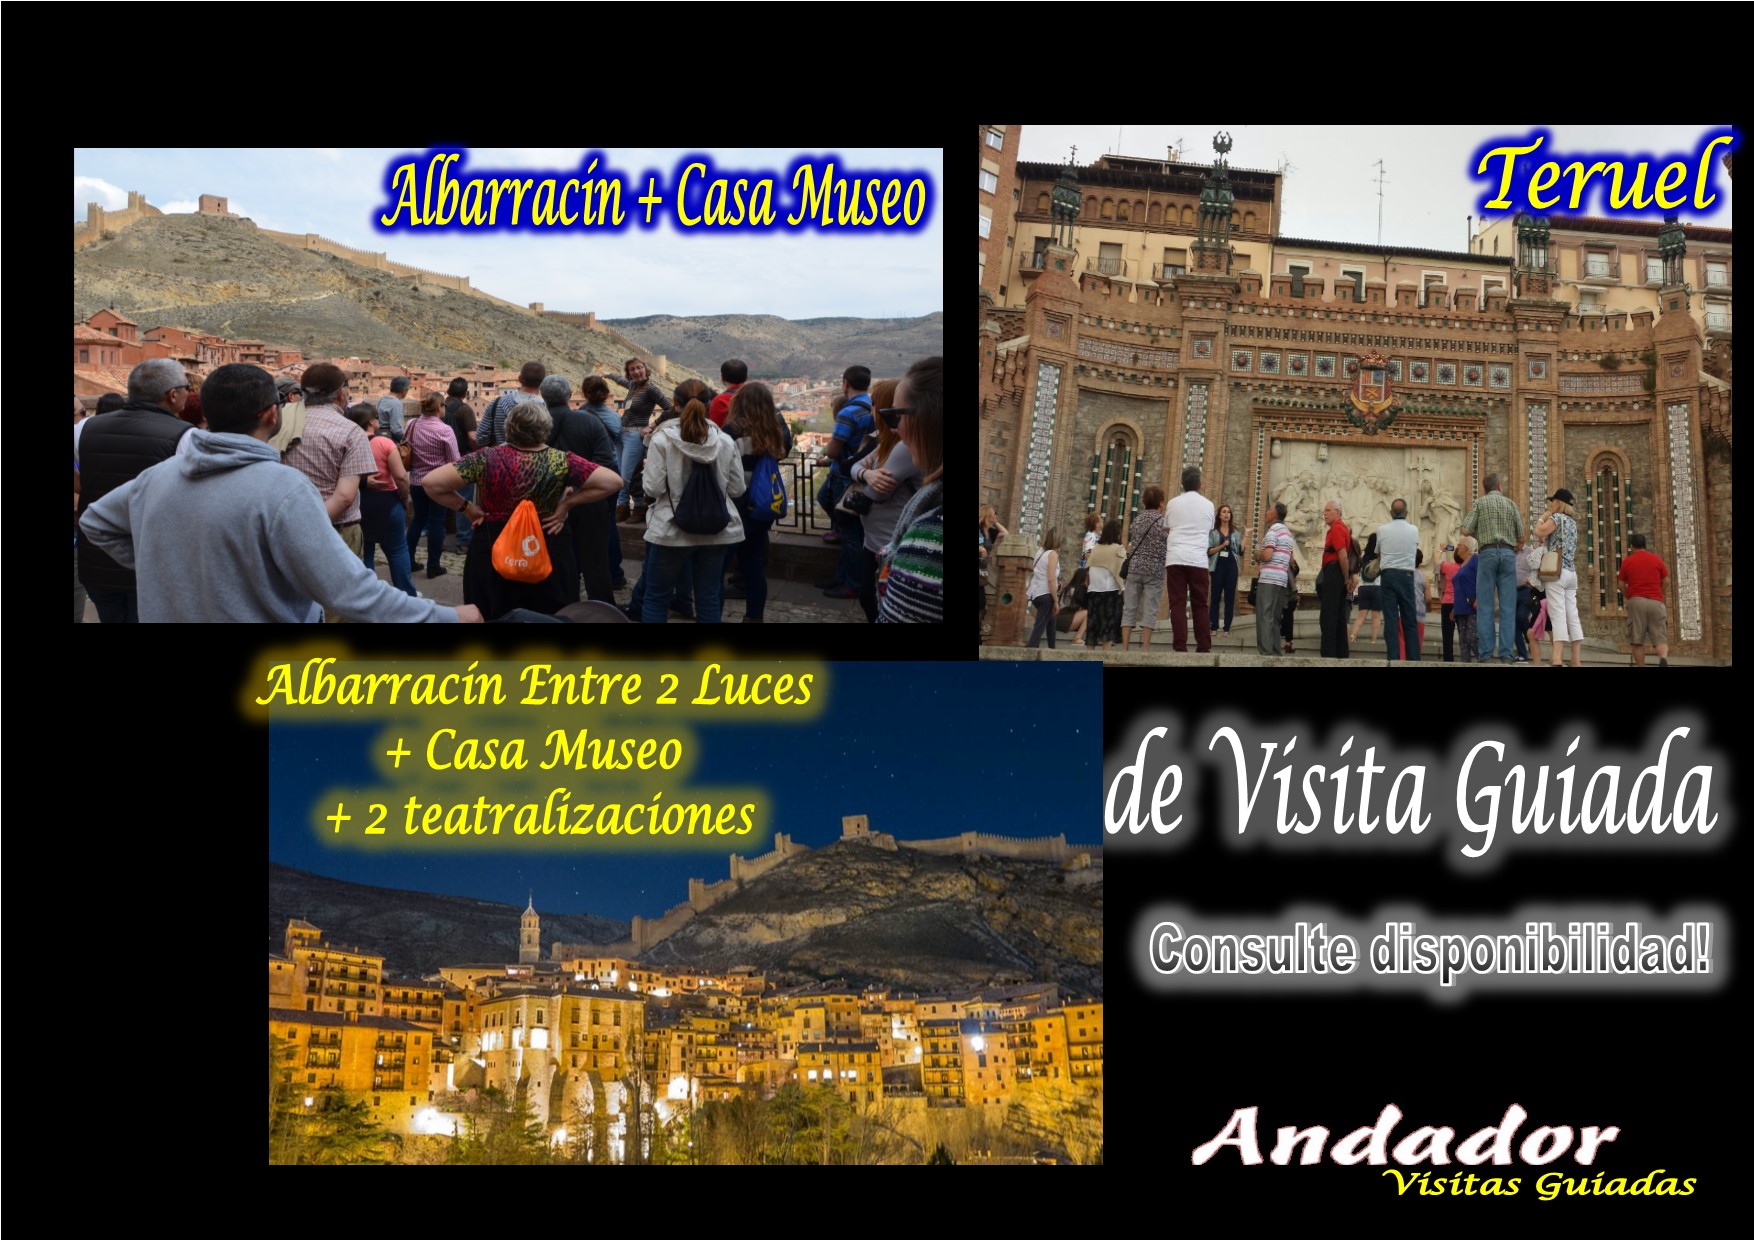 Un fin de semana diferente: Albarracín todos los días, el 23 Albarracín Entre 2 Luces y el 24 Teruel…reserva! te esperamos!